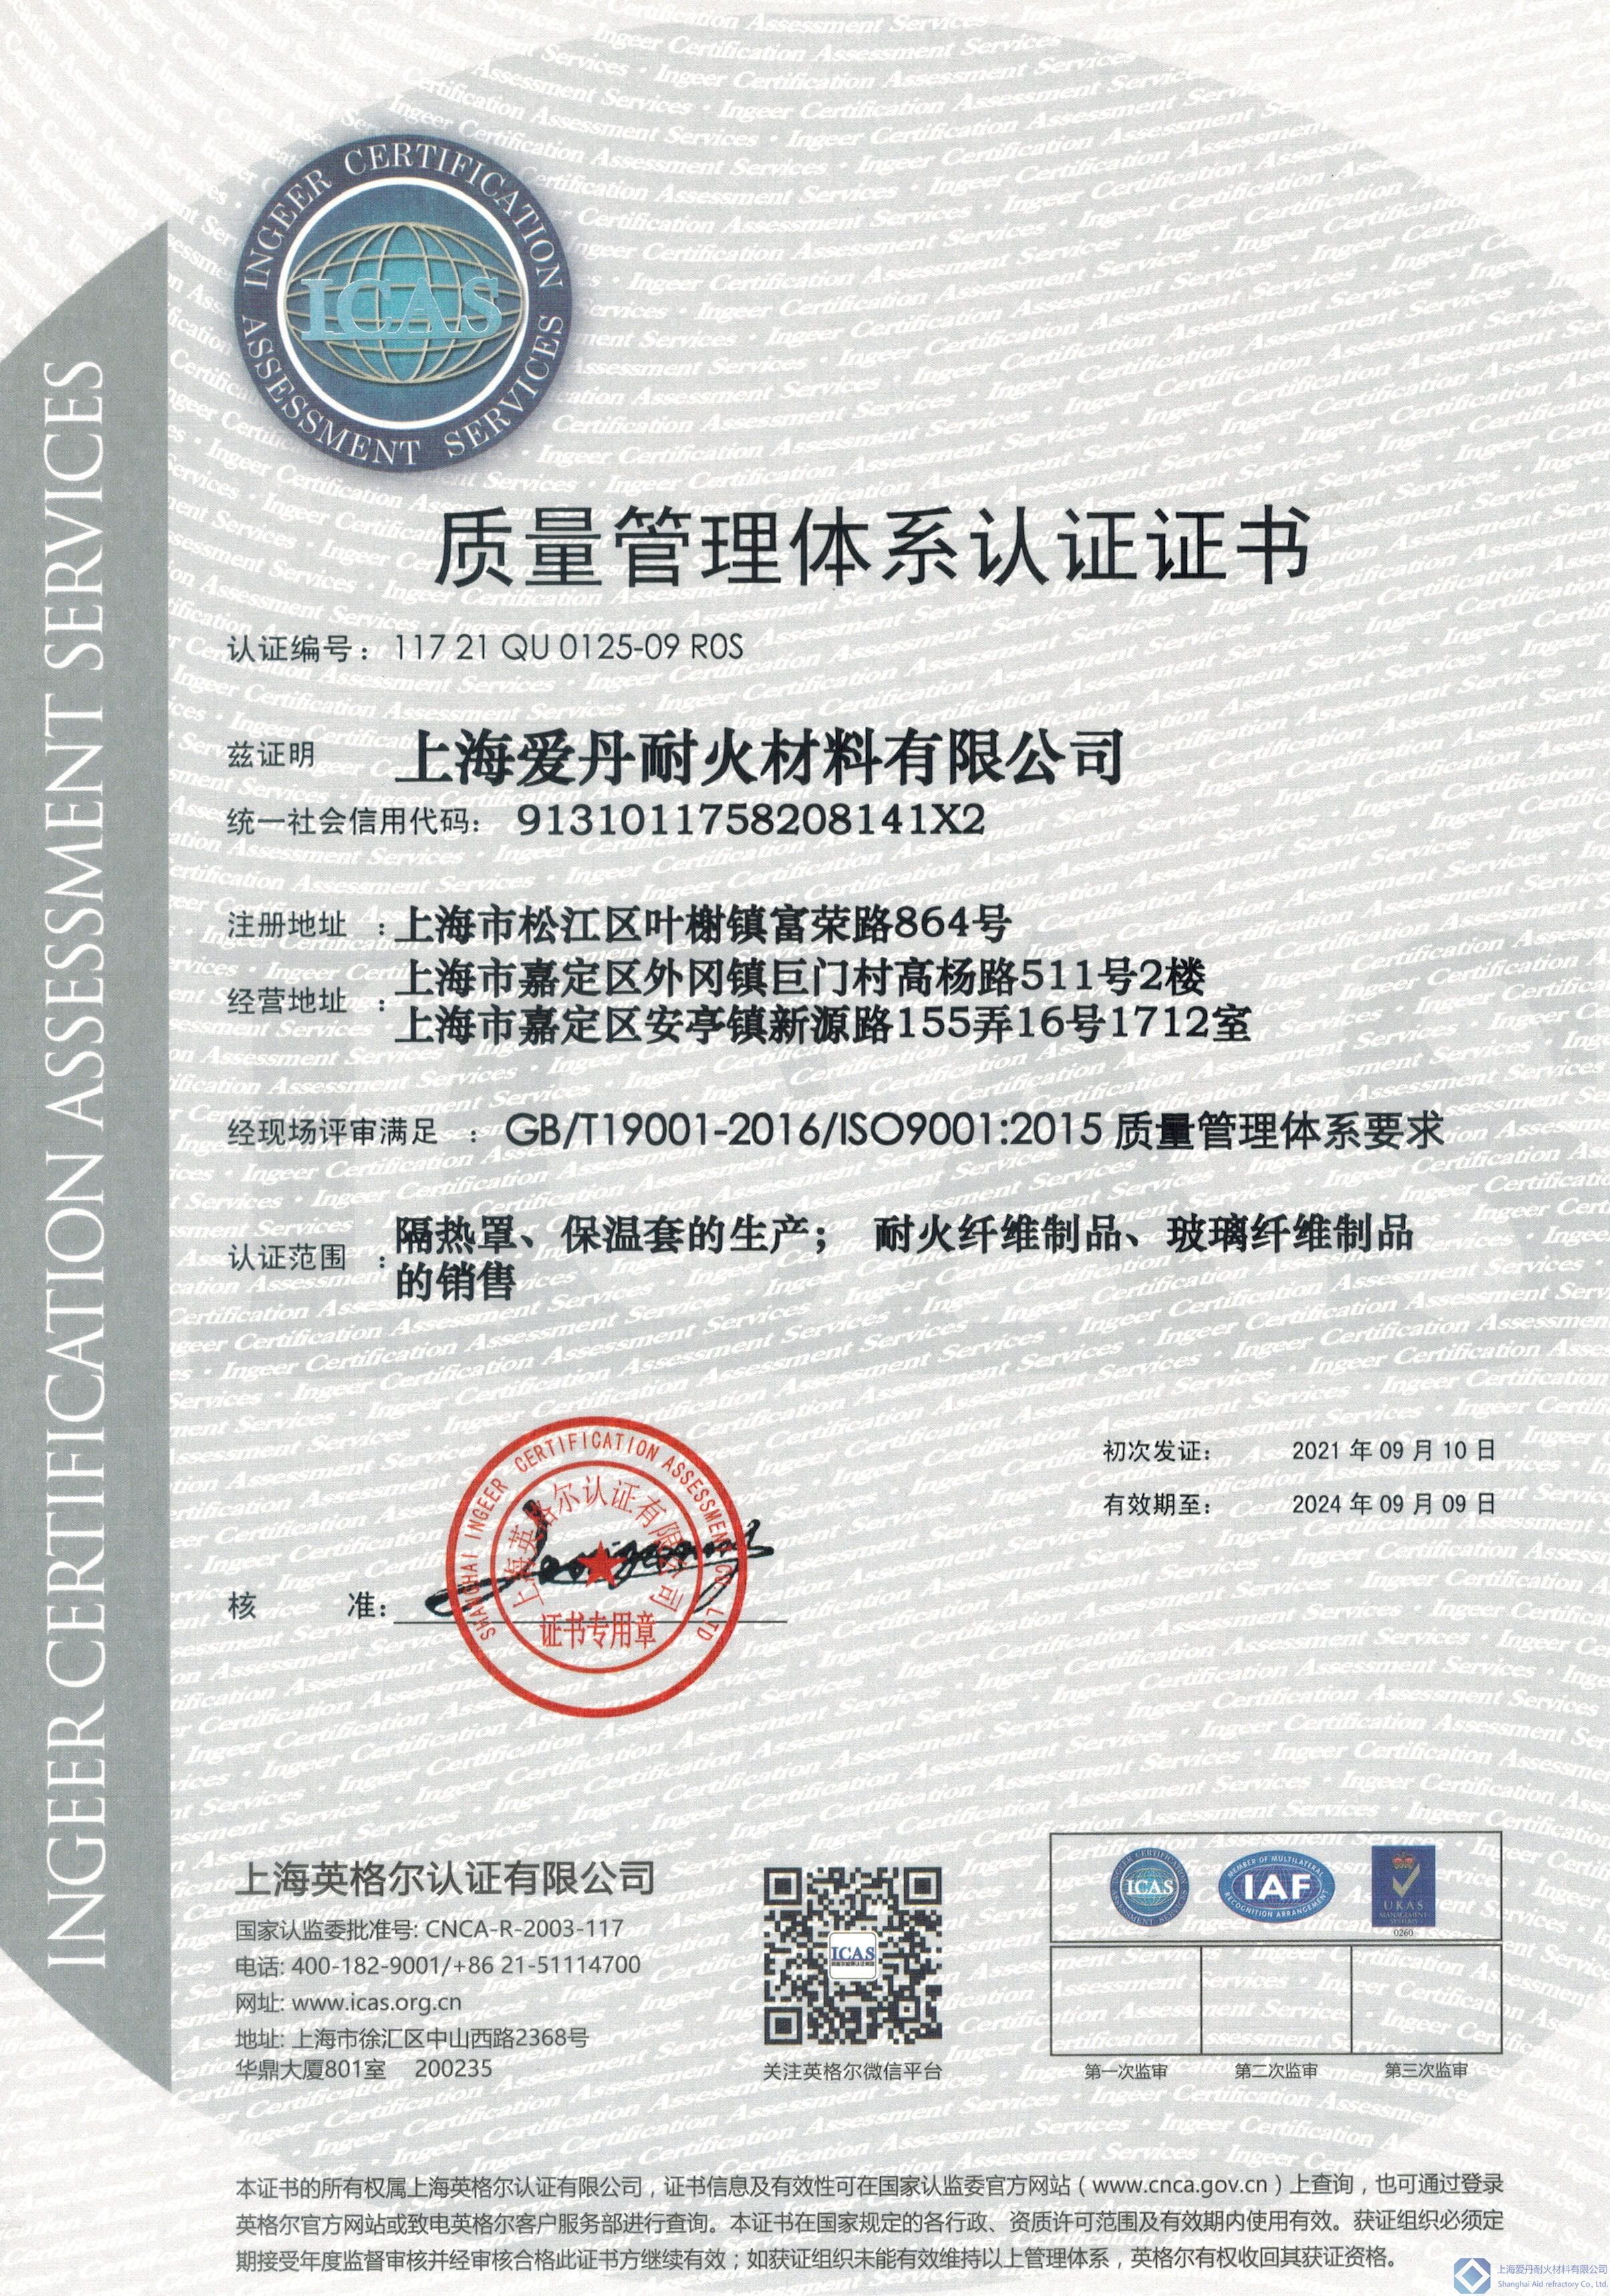 爱丹质量管理体系认证证书